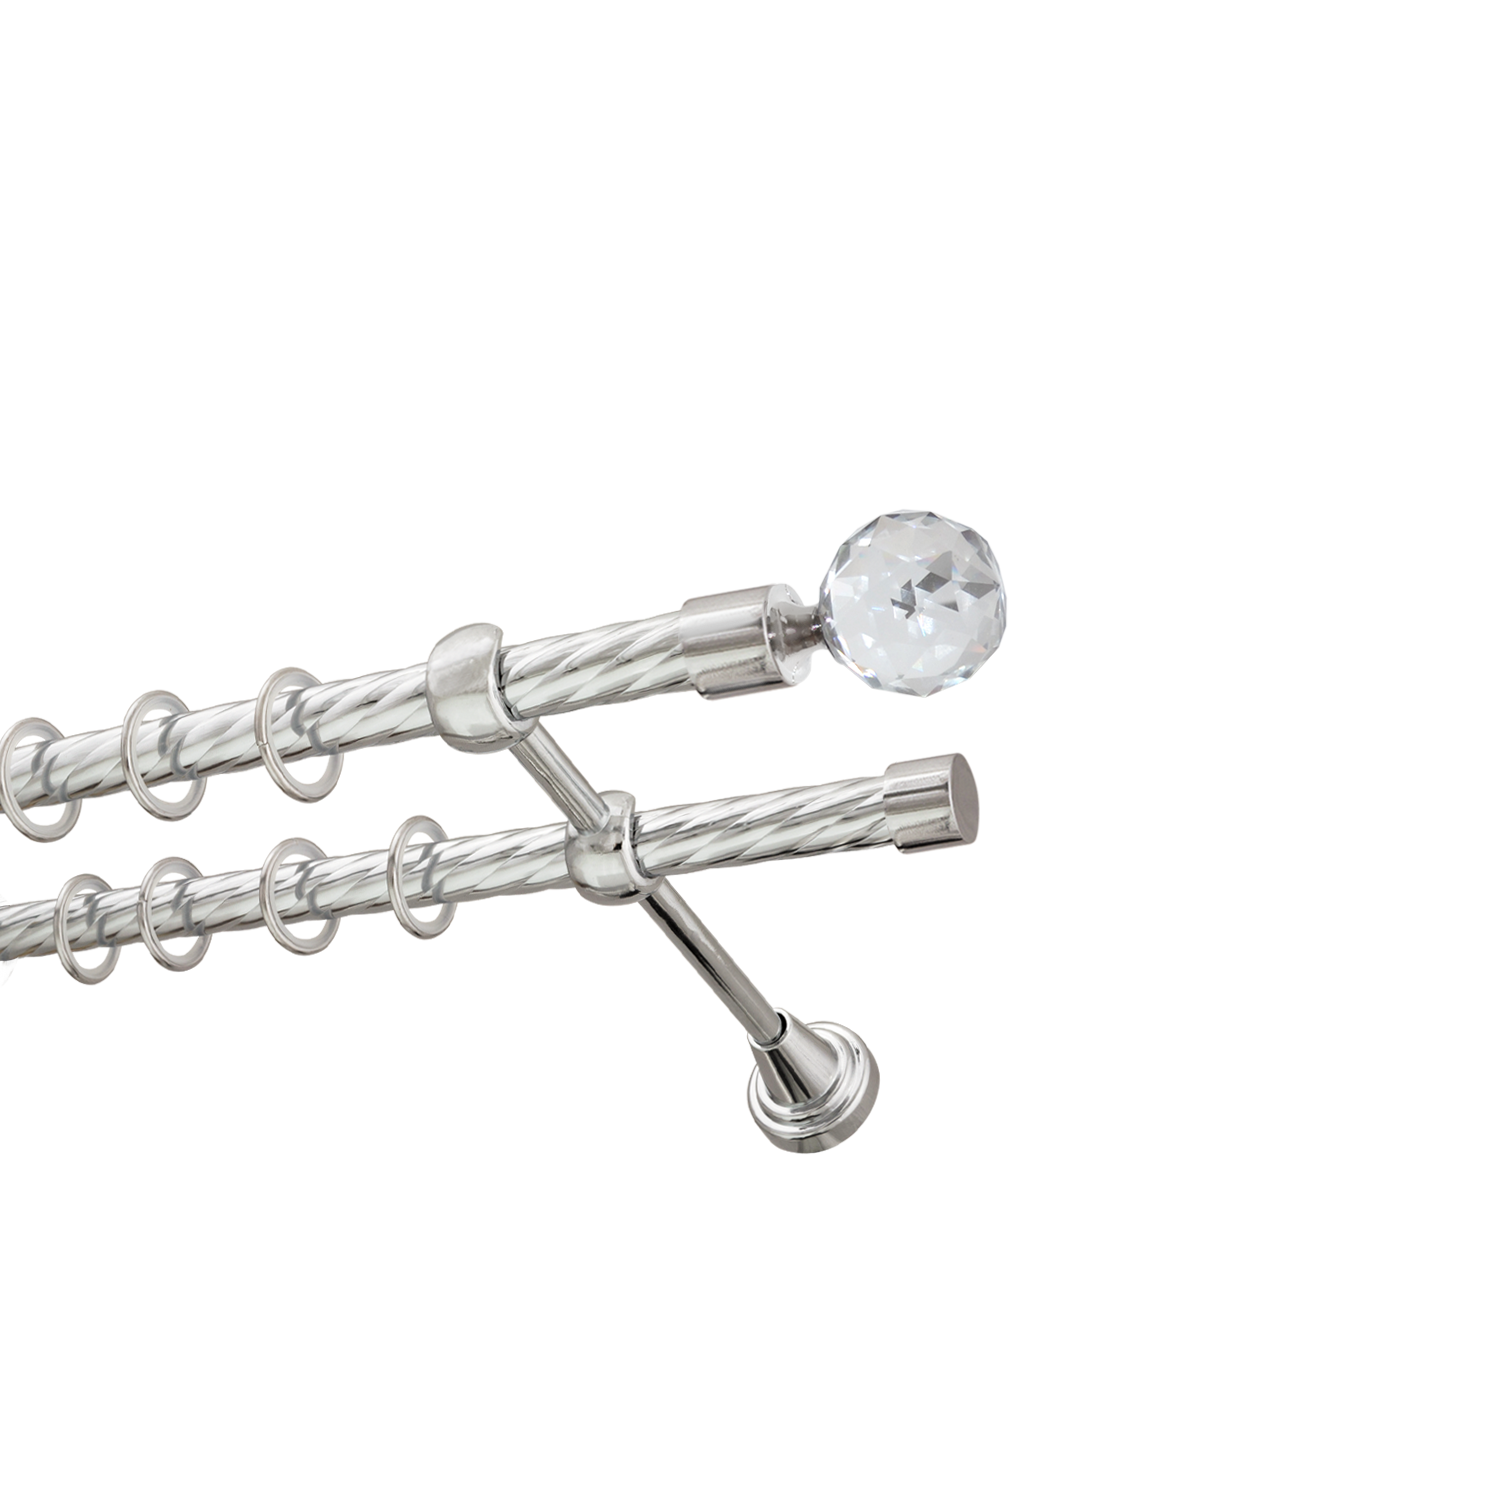 Металлический карниз для штор Карат, двухрядный 16/16 мм, серебро, витая штанга, длина 160 см